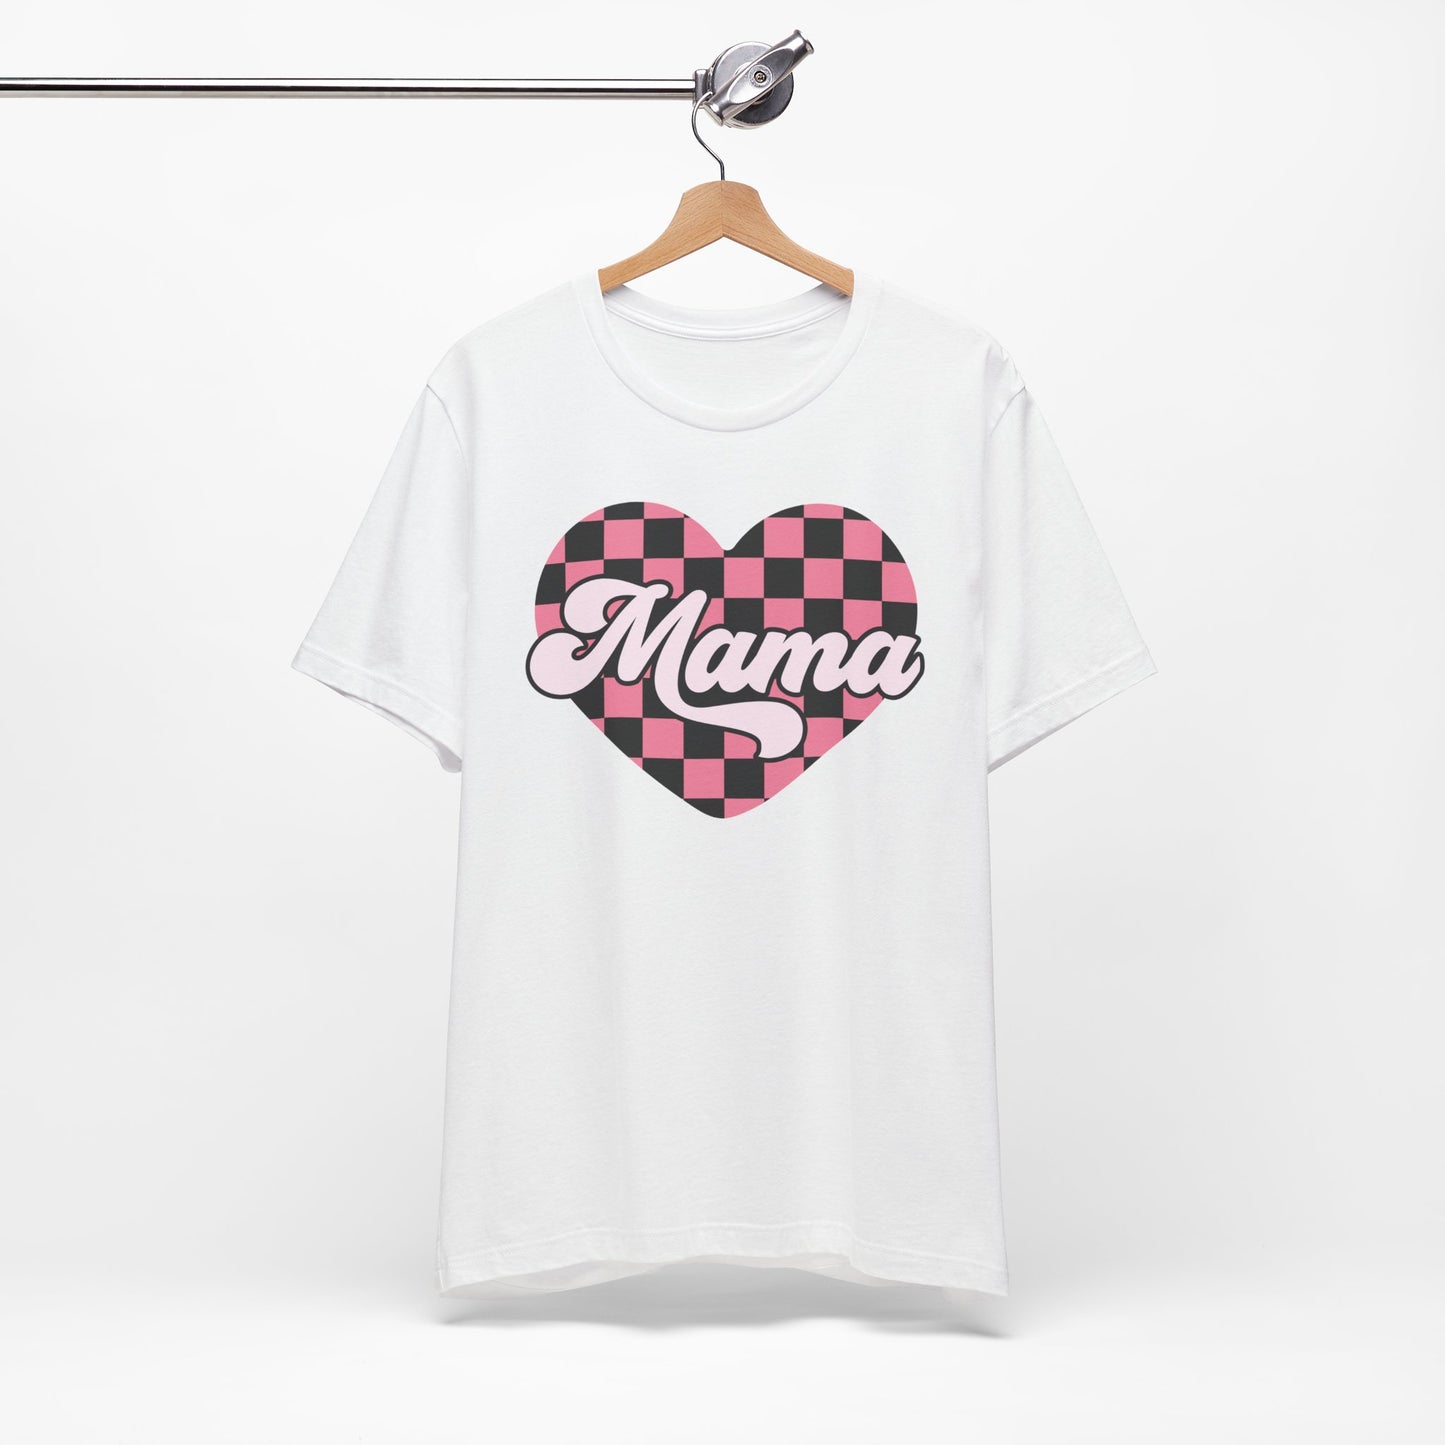 Retro Checkered Mama Heart Short Sleeve Tee